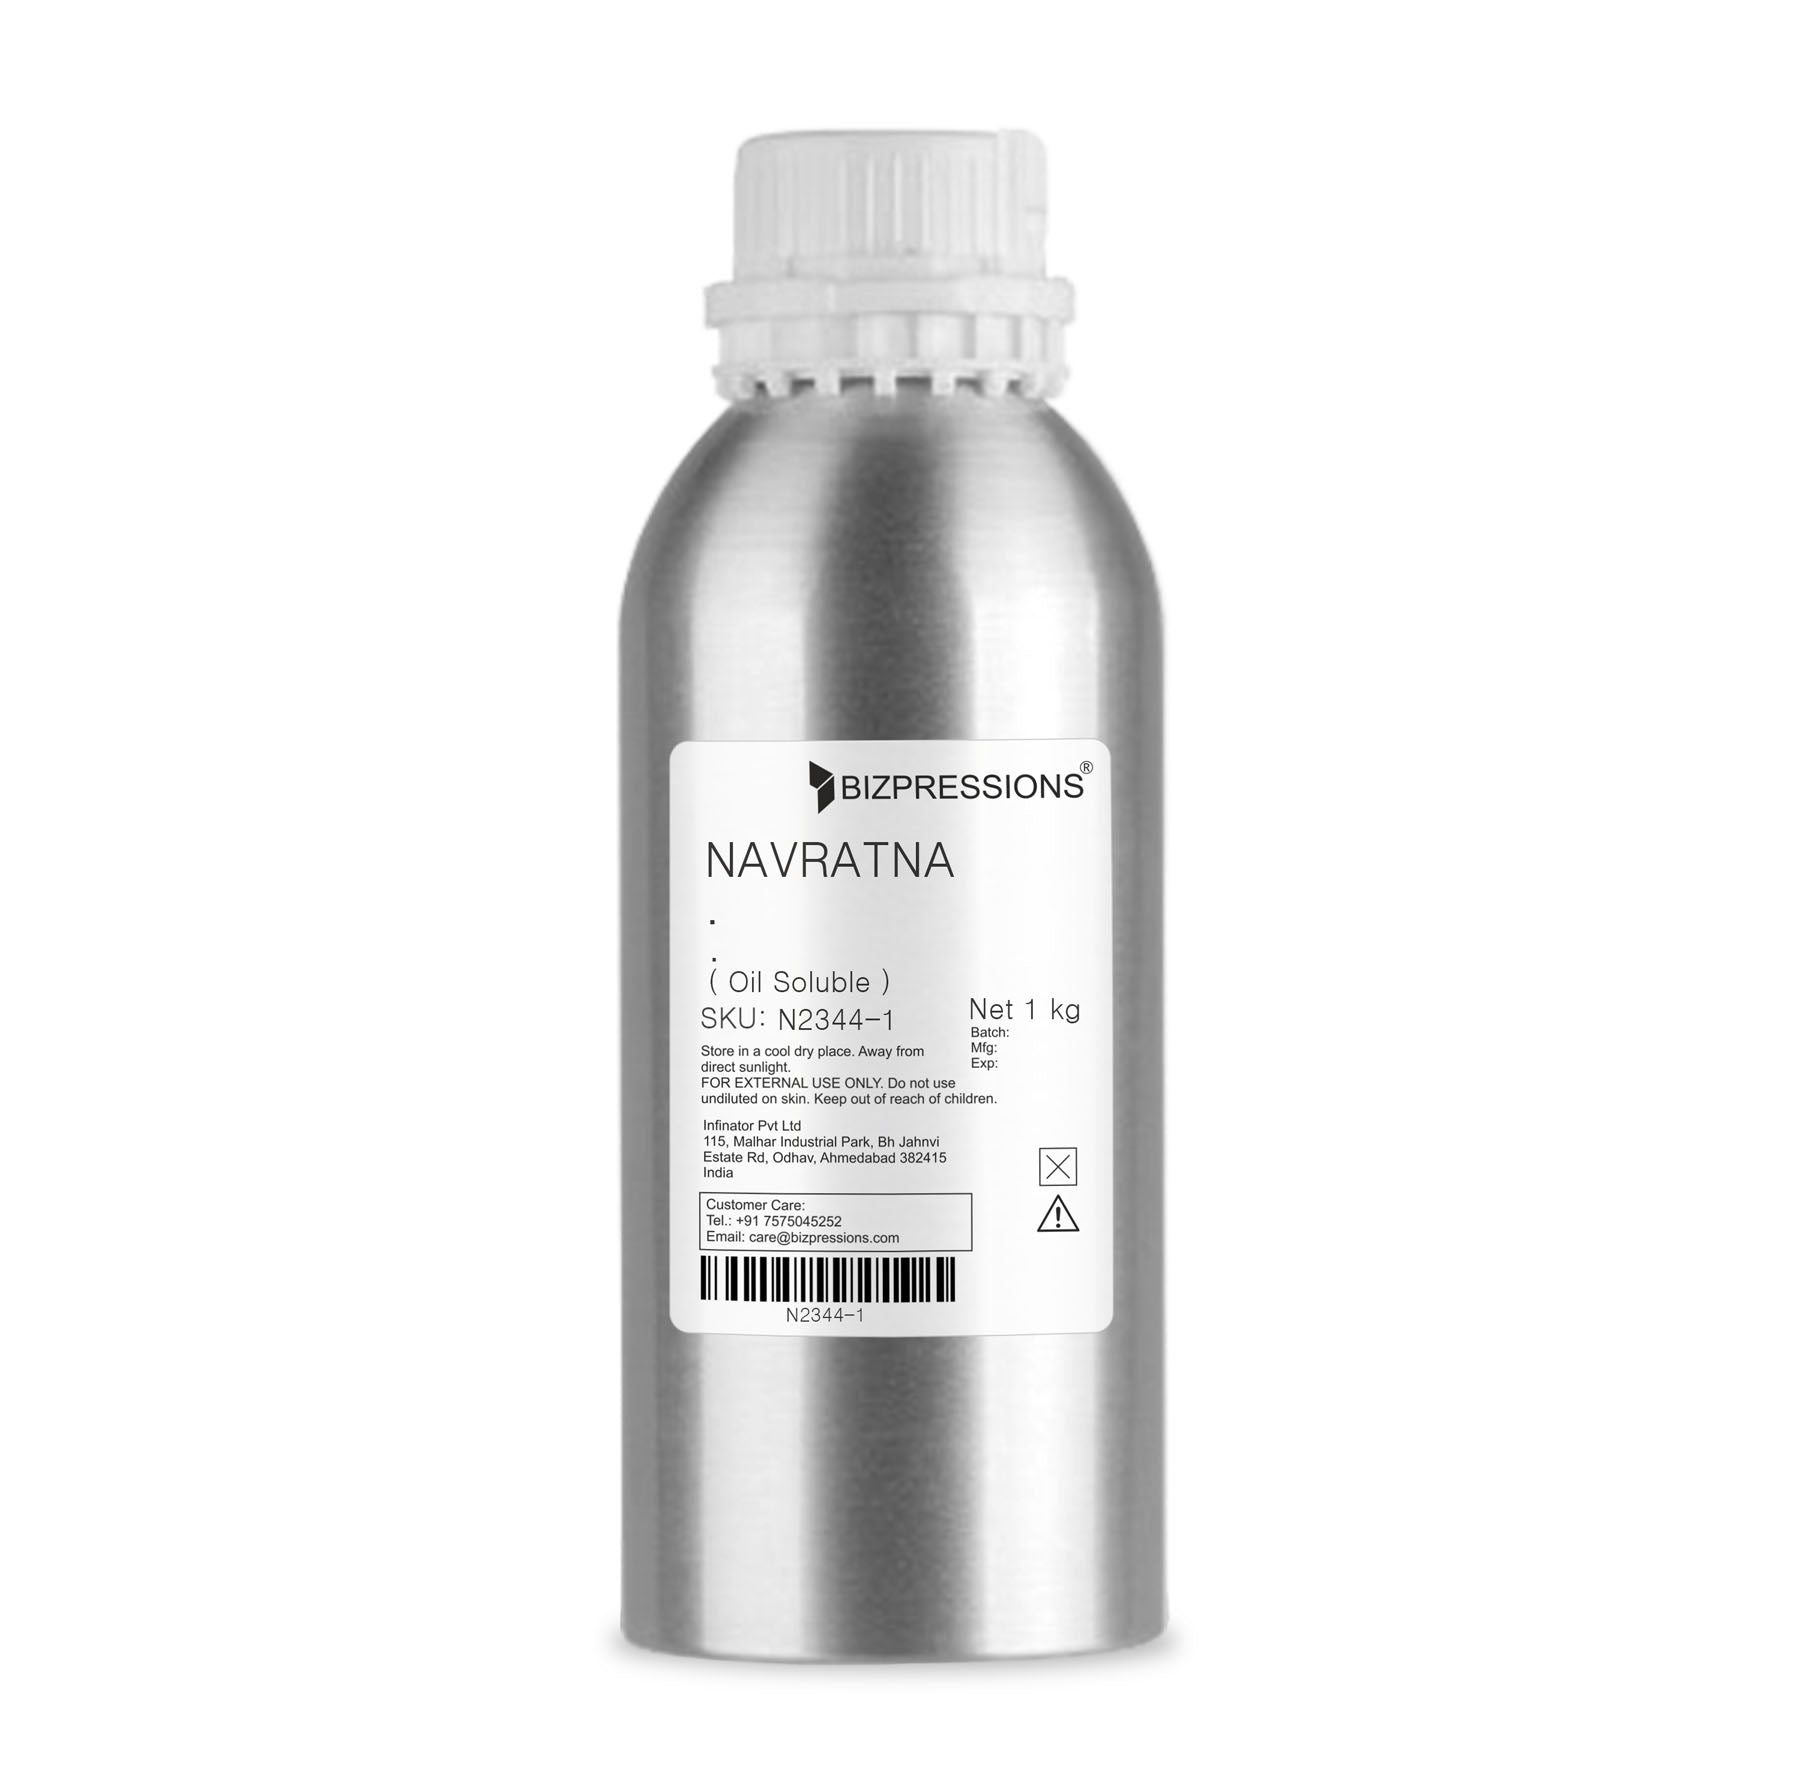 NAVRATNA - Fragrance ( Oil Soluble ) - 1 kg